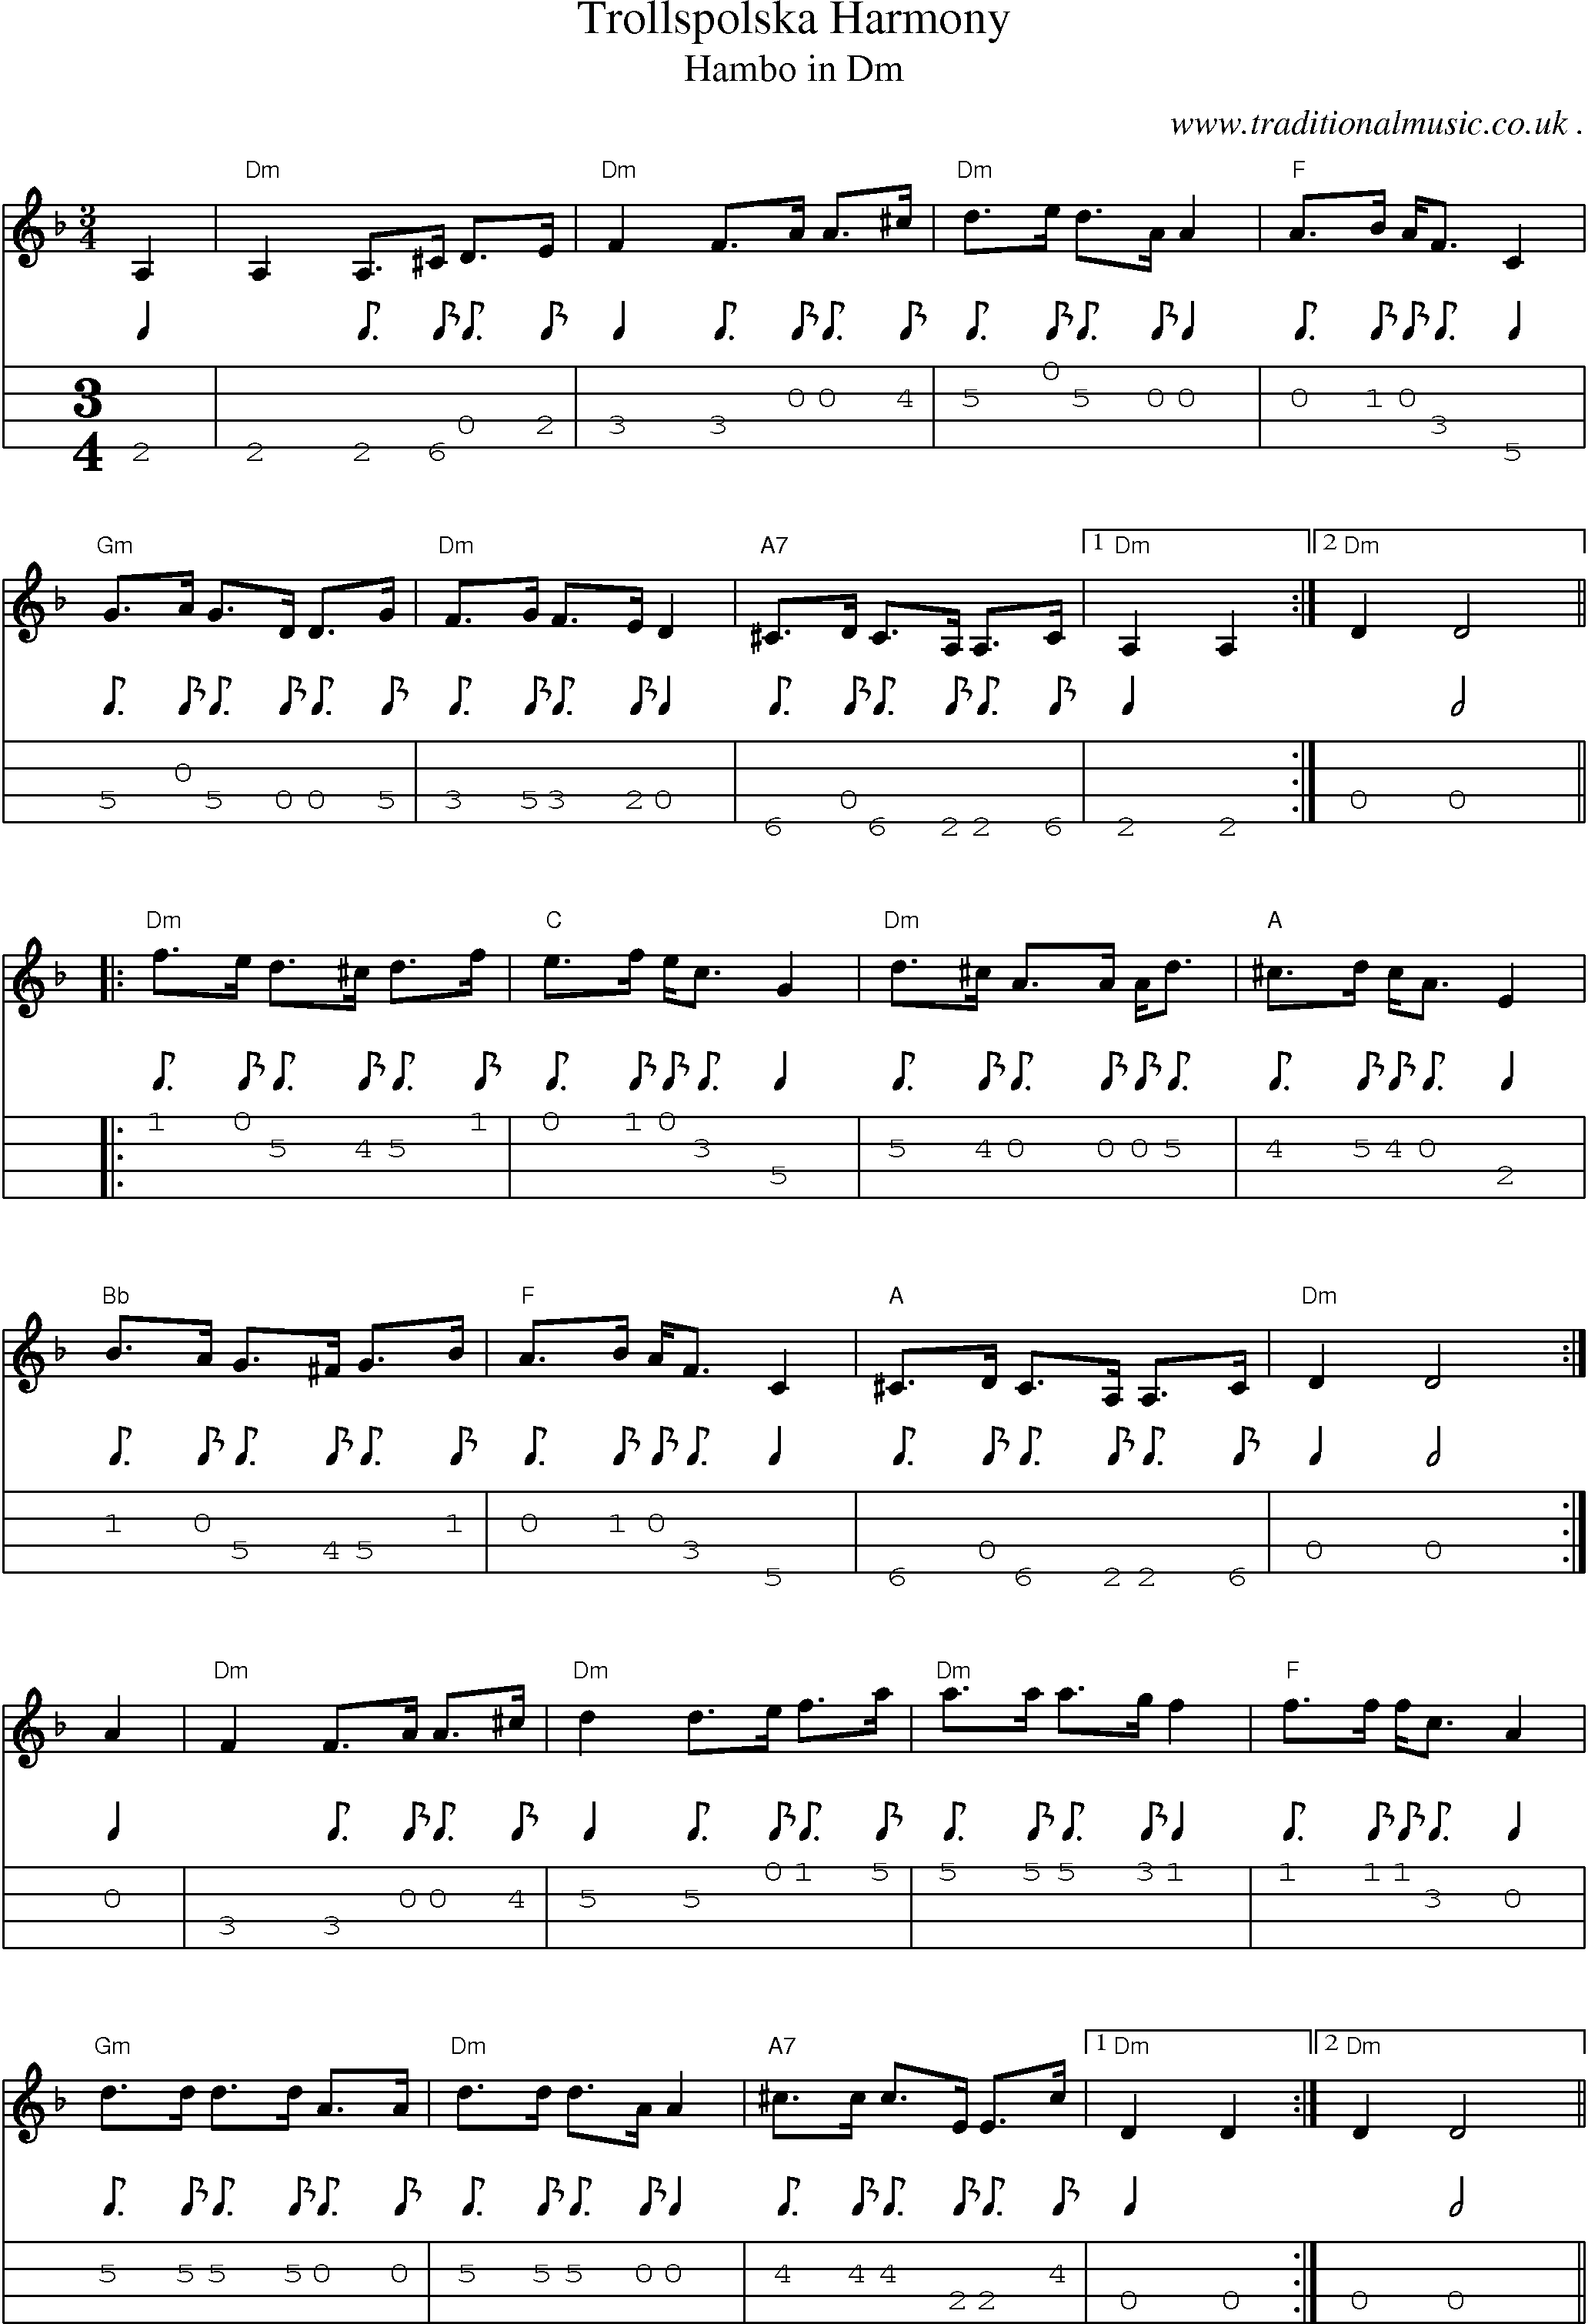 Music Score and Guitar Tabs for Trollspolska Harmony